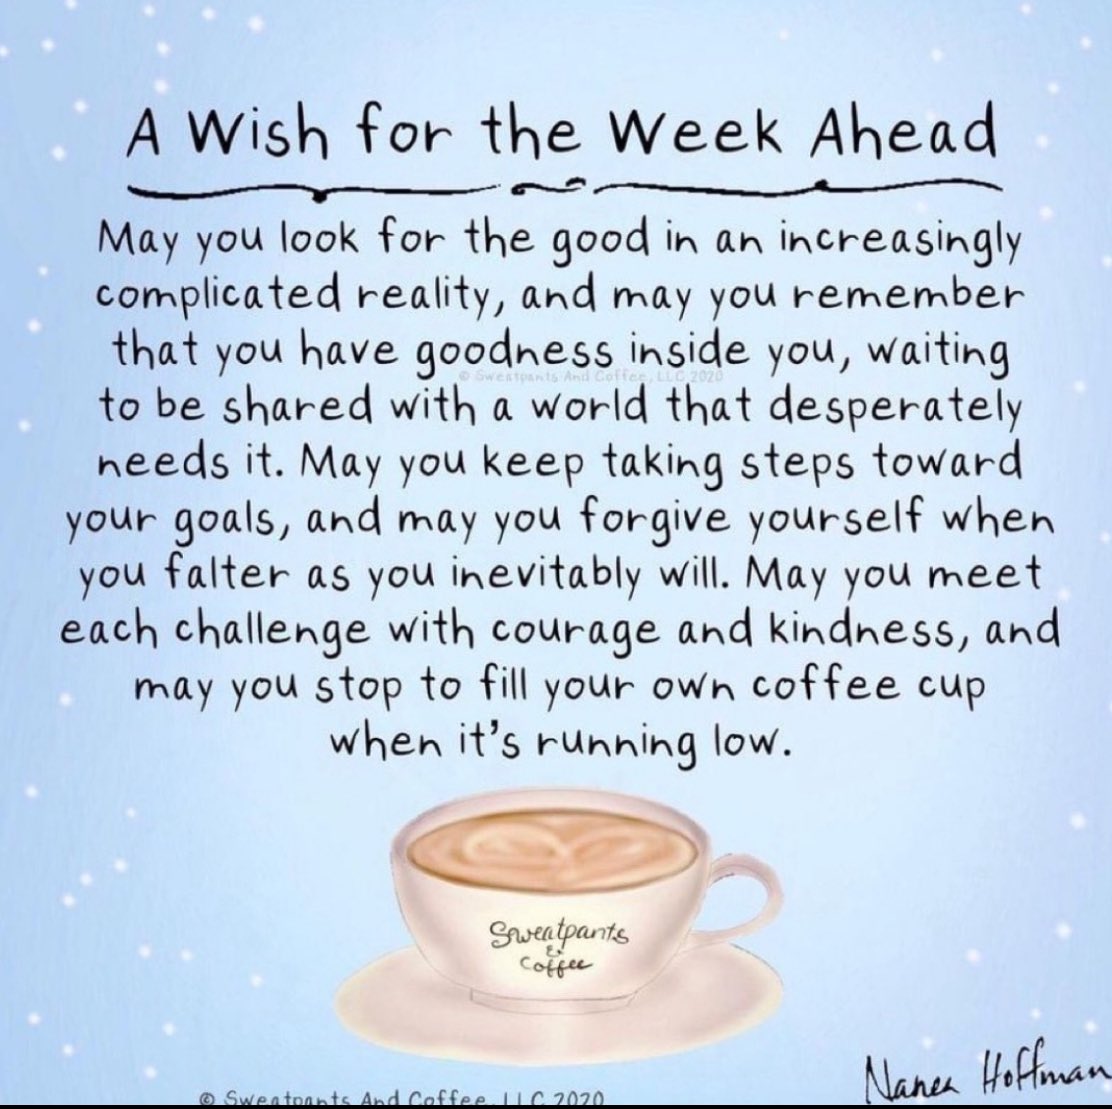 Have a great new week. 💚 #newweek #writer #writingcommunity #monday